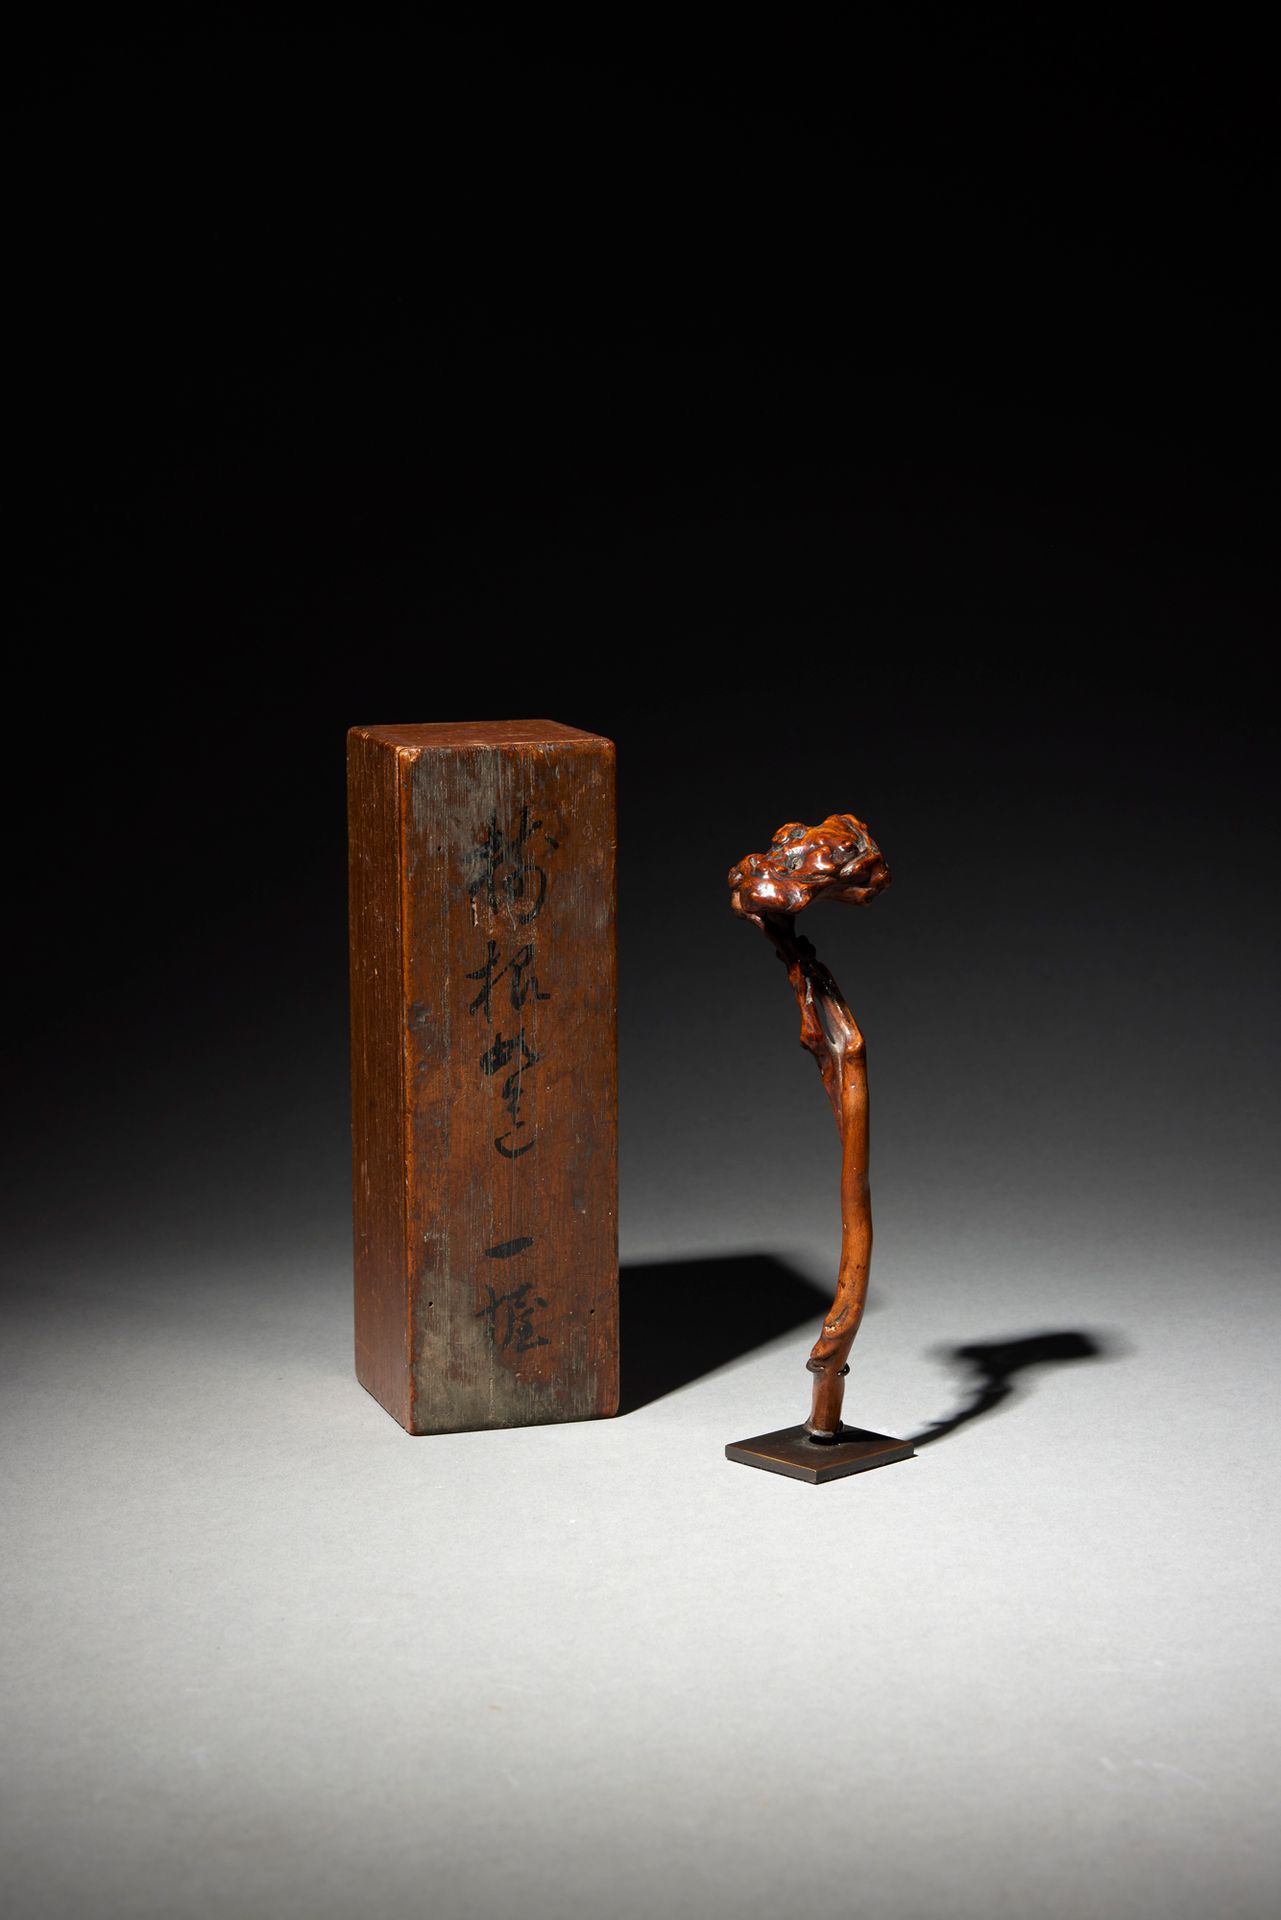 Null Sceptre

Japon, XIXème

Bois

H. 15 cm



Publication

Durieu M., Presque r&hellip;